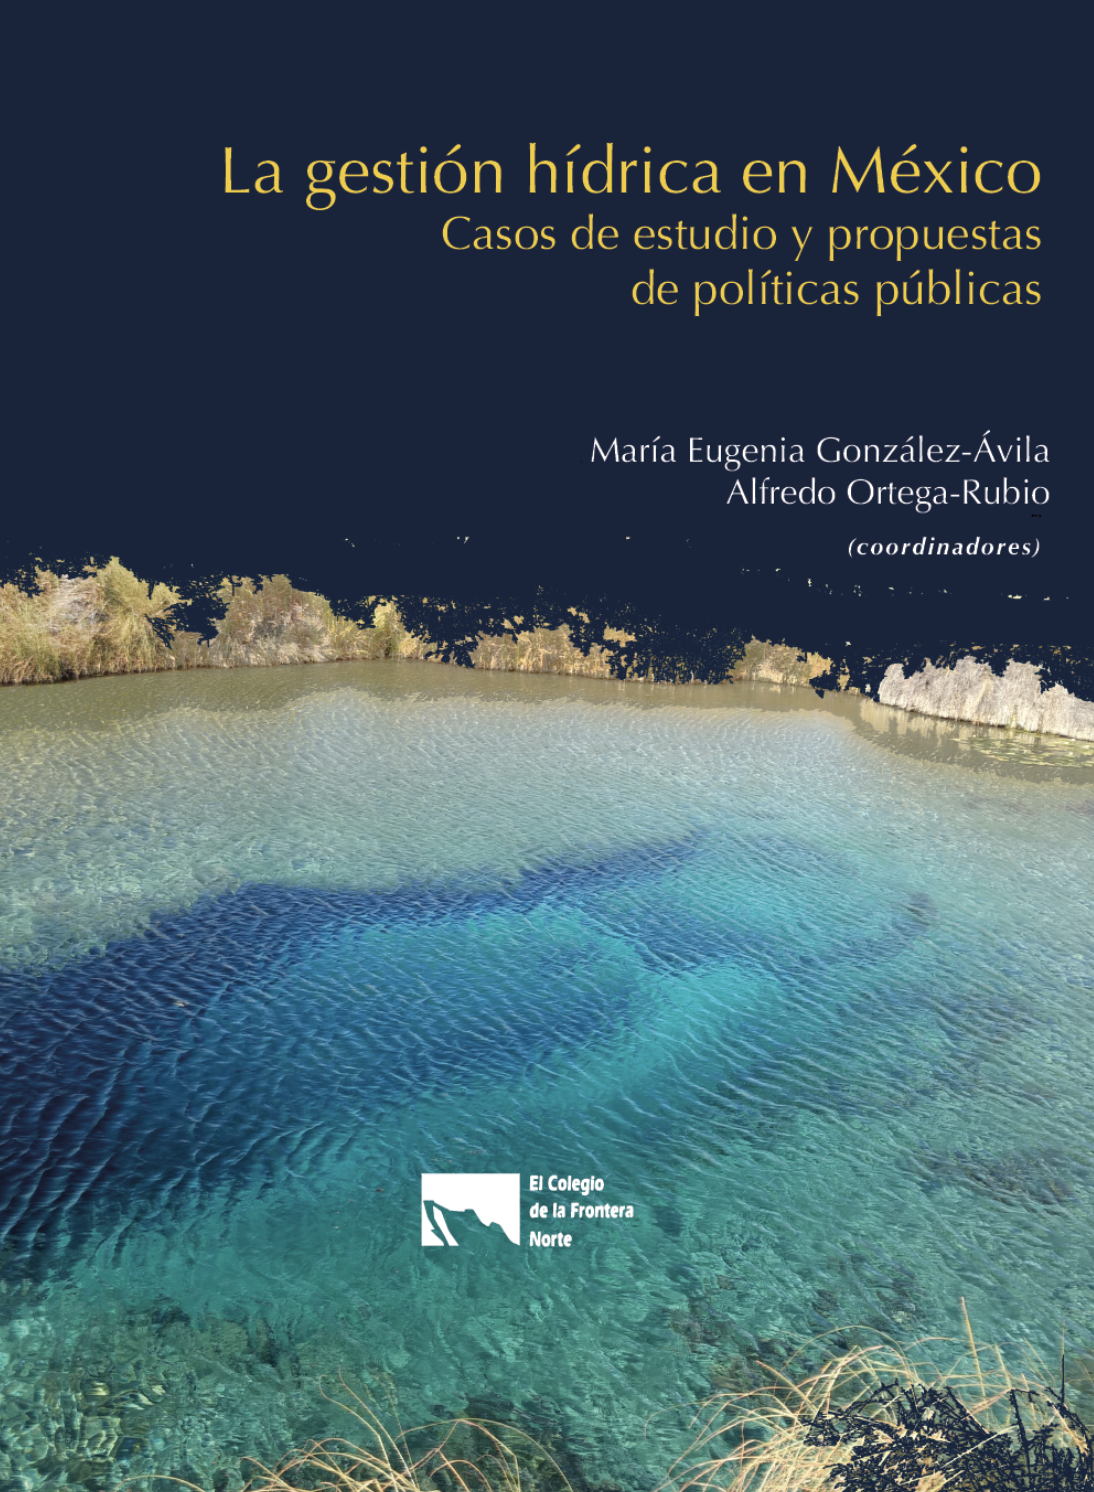 La gestión hídrica en México: Casos de estudio y propuestas de políticas públicas (El Colegio de la Frontera Norte)